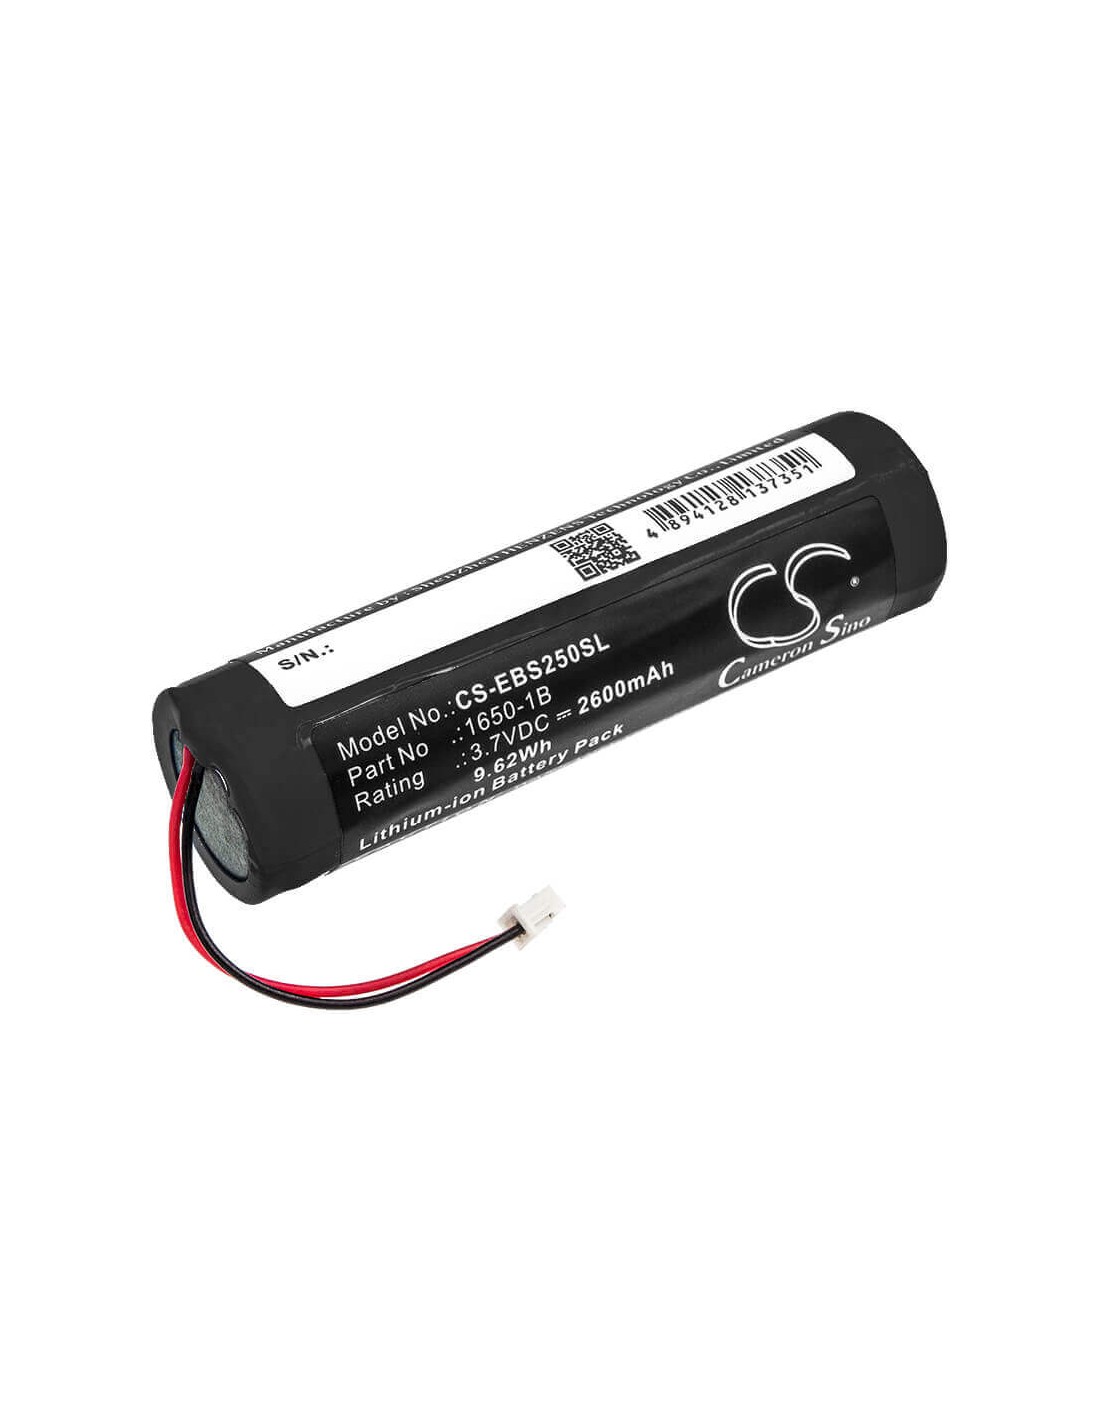 Battery for Eschenbach, Smartlux, Smartlux 2.5, 3.7V, 2600mAh - 9.62Wh